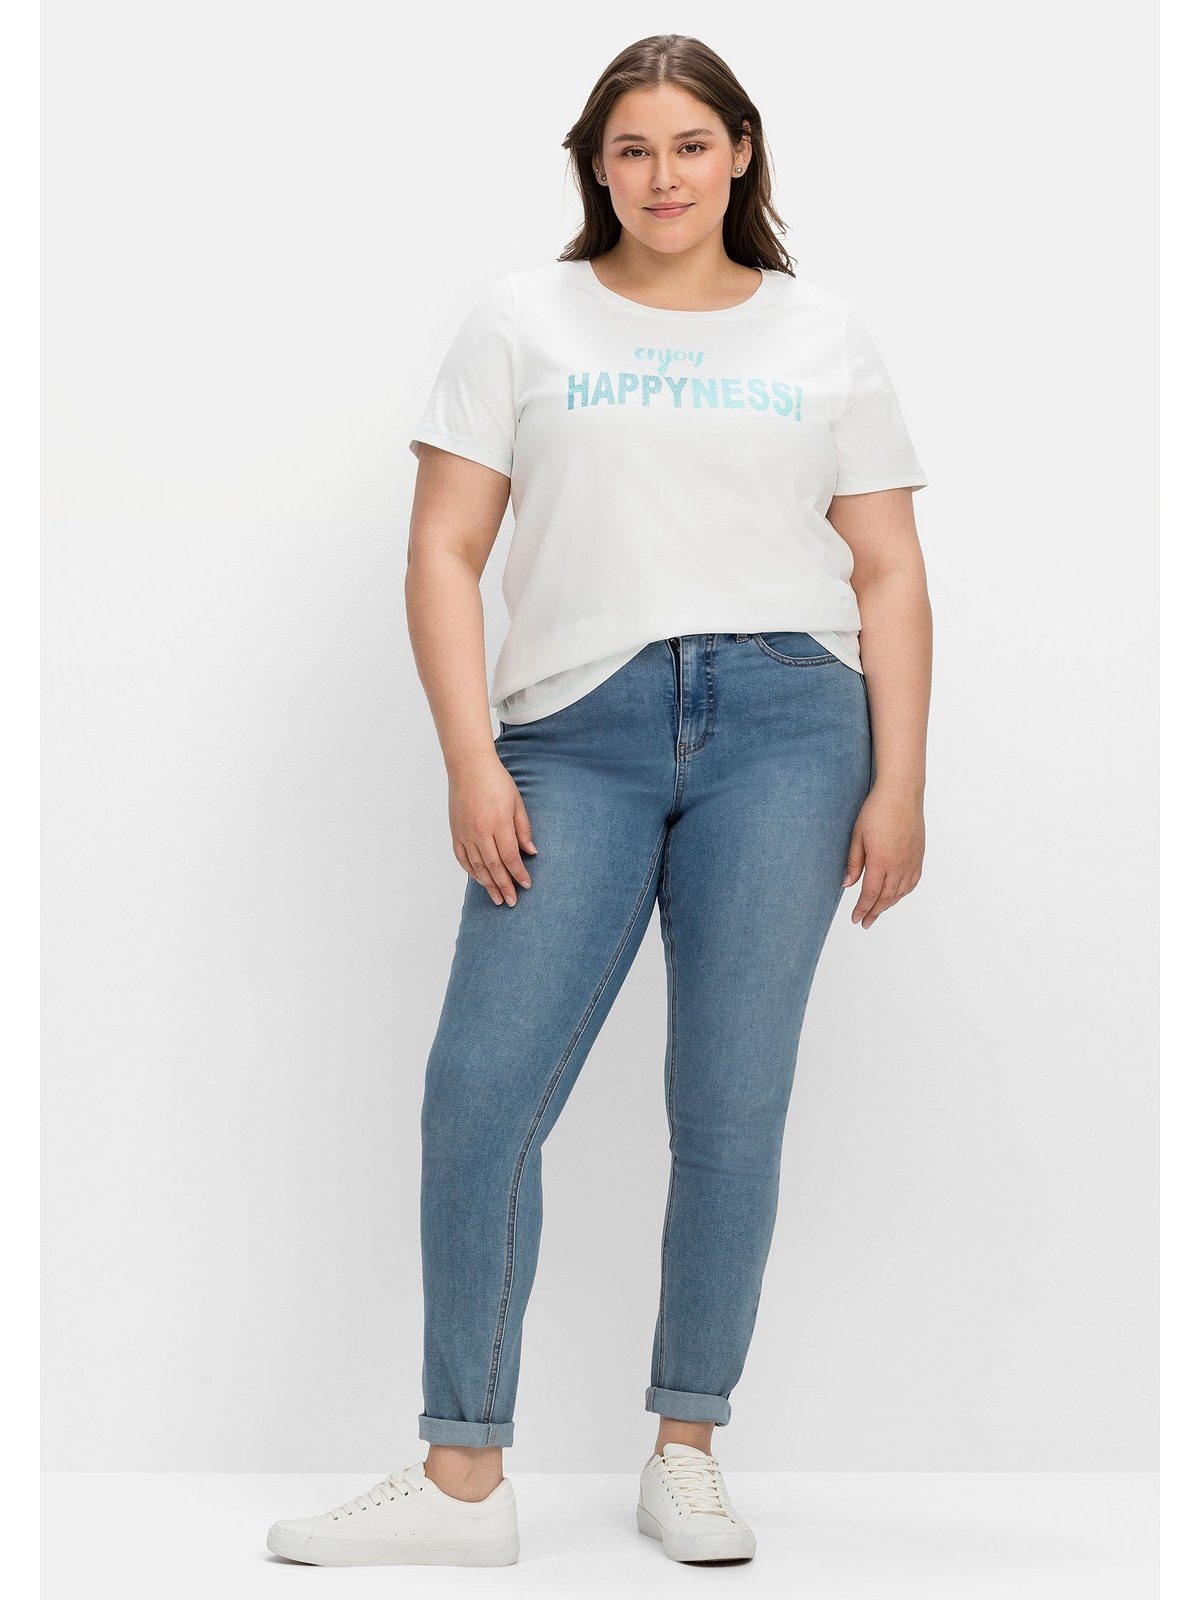 Größen leicht Große bedruckt T-Shirt tailliert Sheego mit Wordingprint, weiß